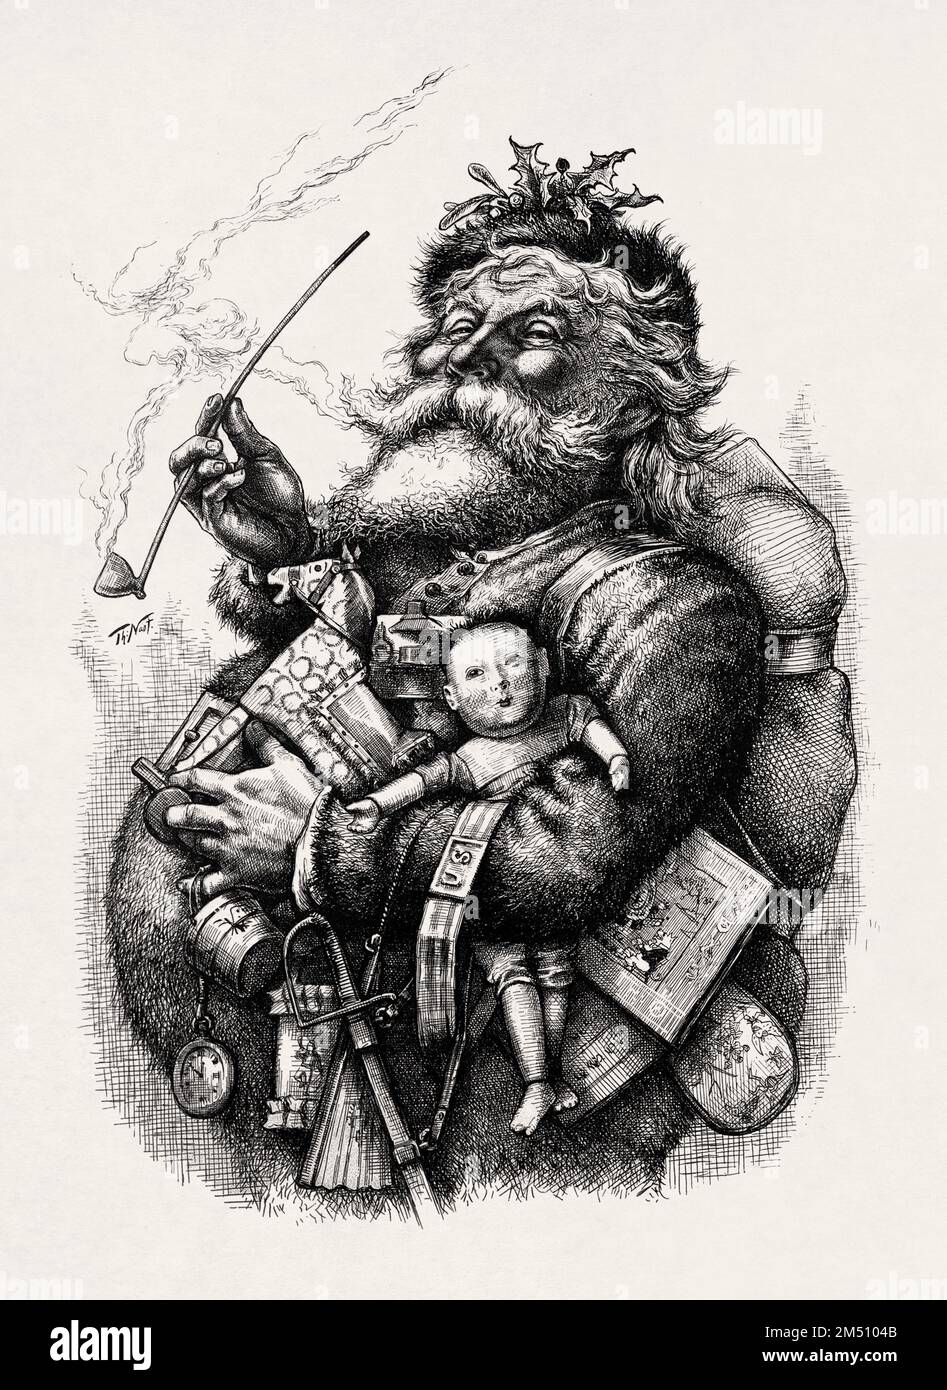 Ilustración de Santa Claus por Thomas Nast creada en 1881. Foto de stock